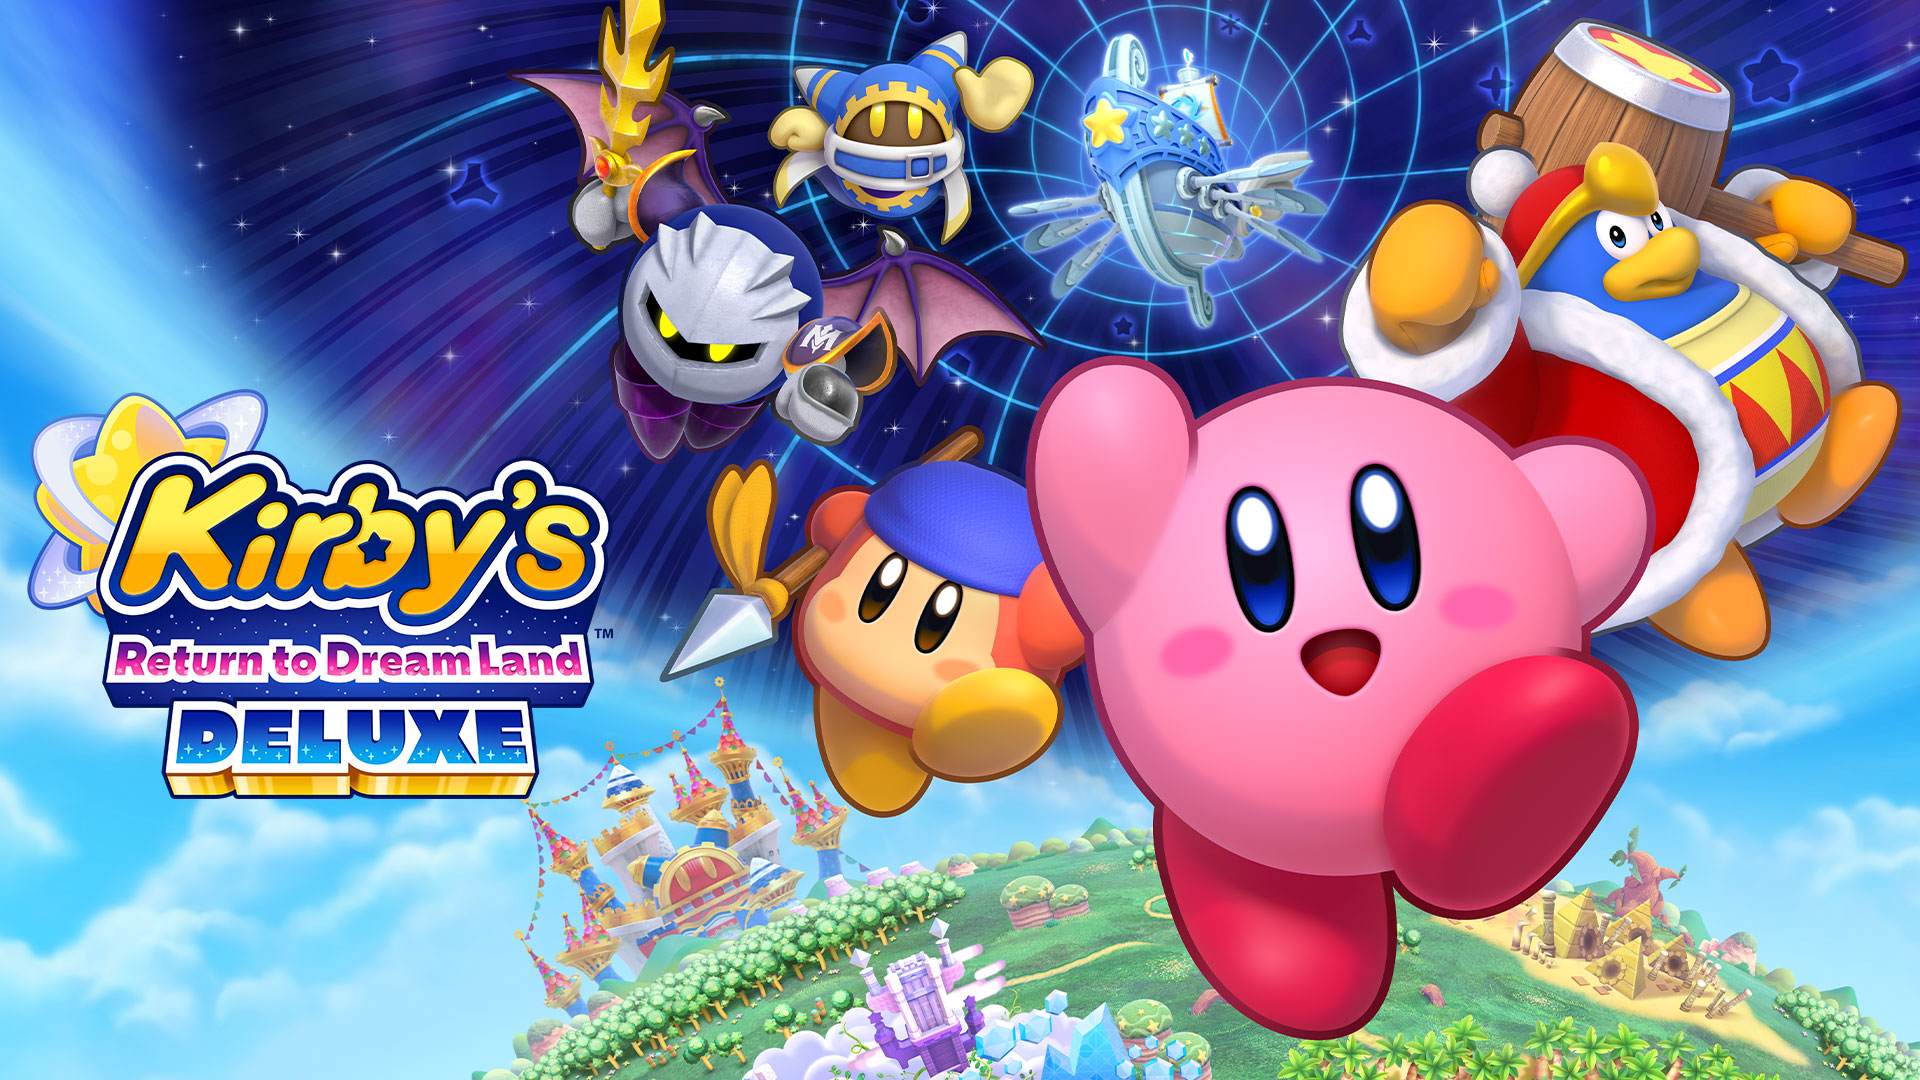 Kirbys Return To DreamLand